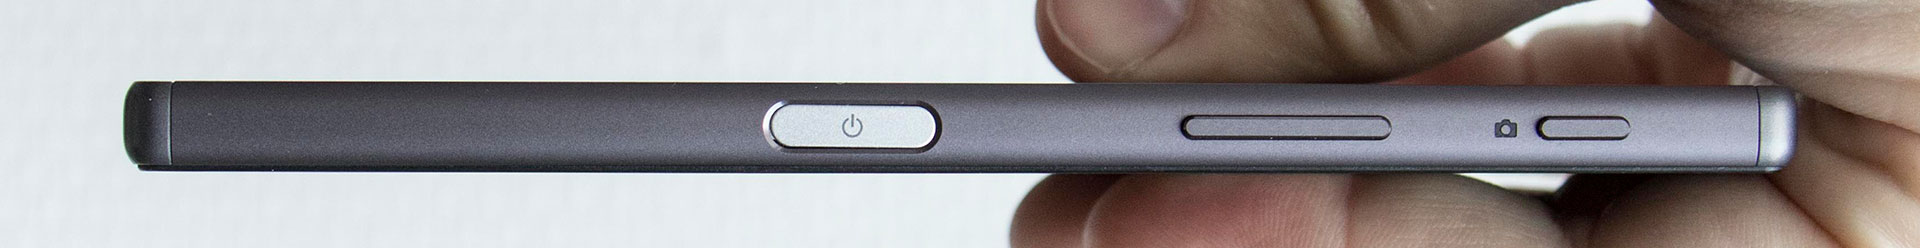 Sony-Xperia-Z5-Vingerafdruk